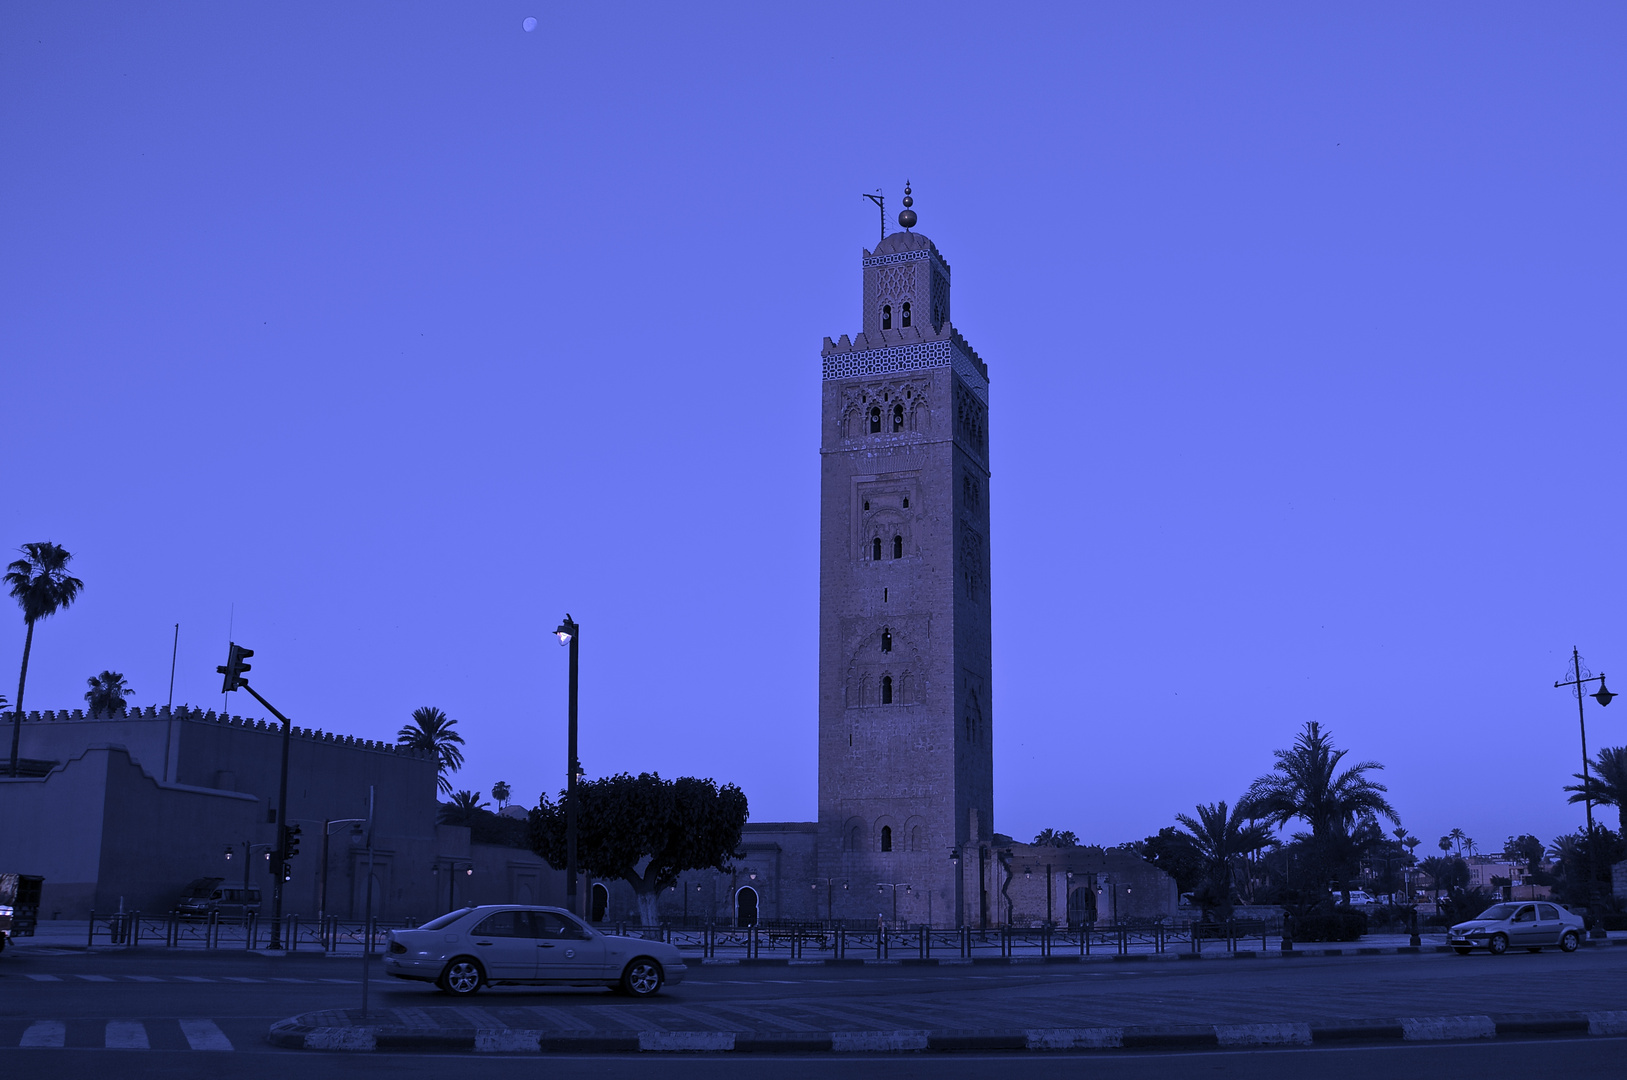 Nuit marocaine. (;-))))